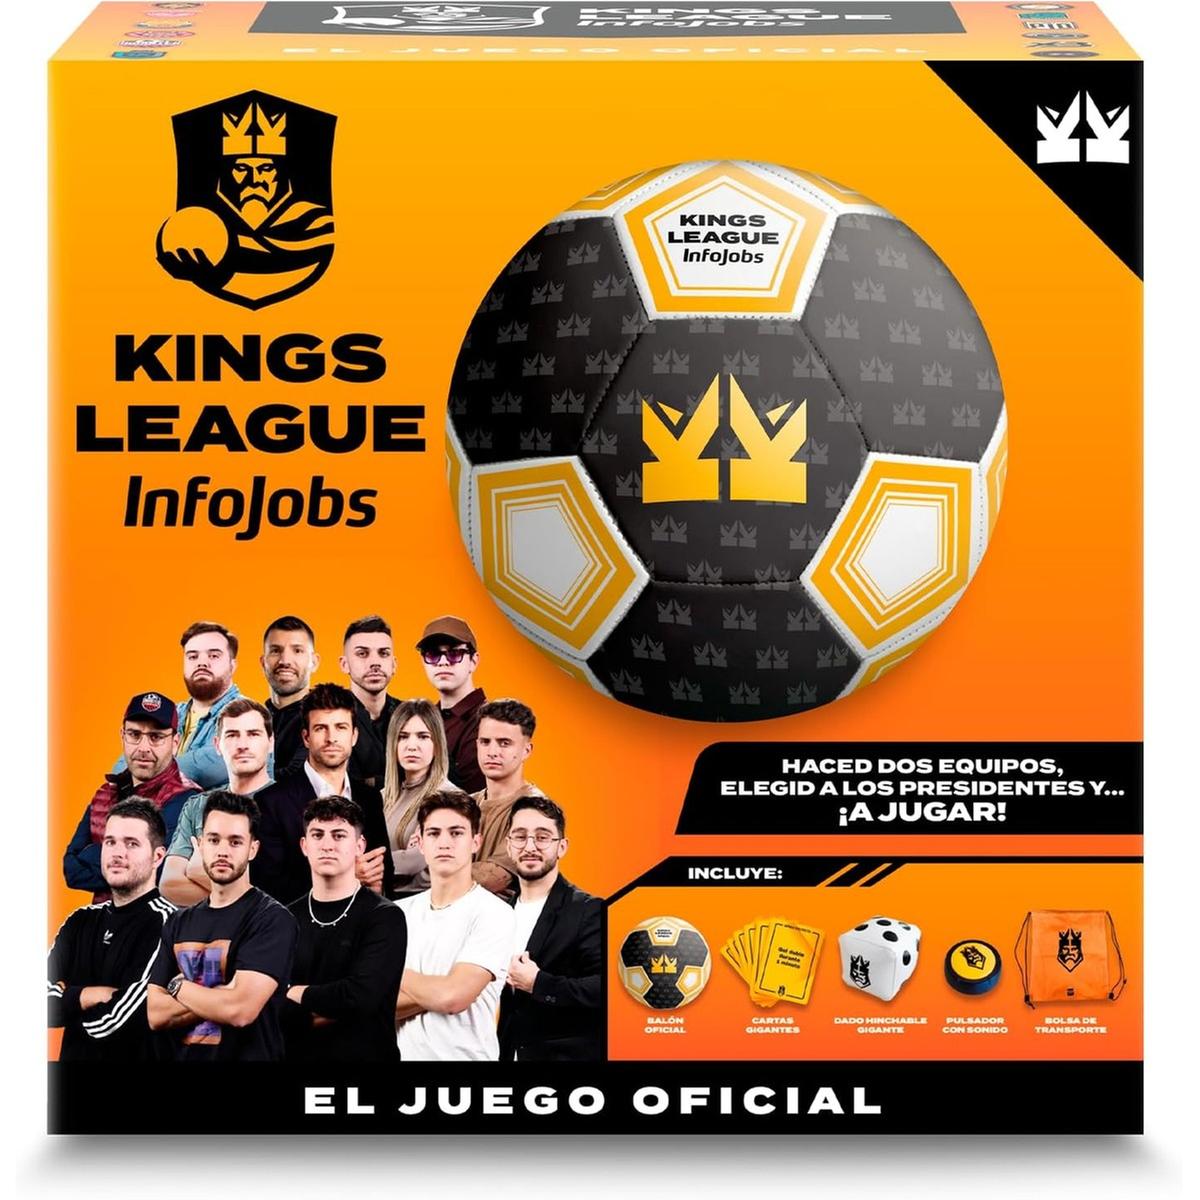 IMC Toys - Juego de futbol oficial Kings League recrea un partido real ㅤ, IMC Toys